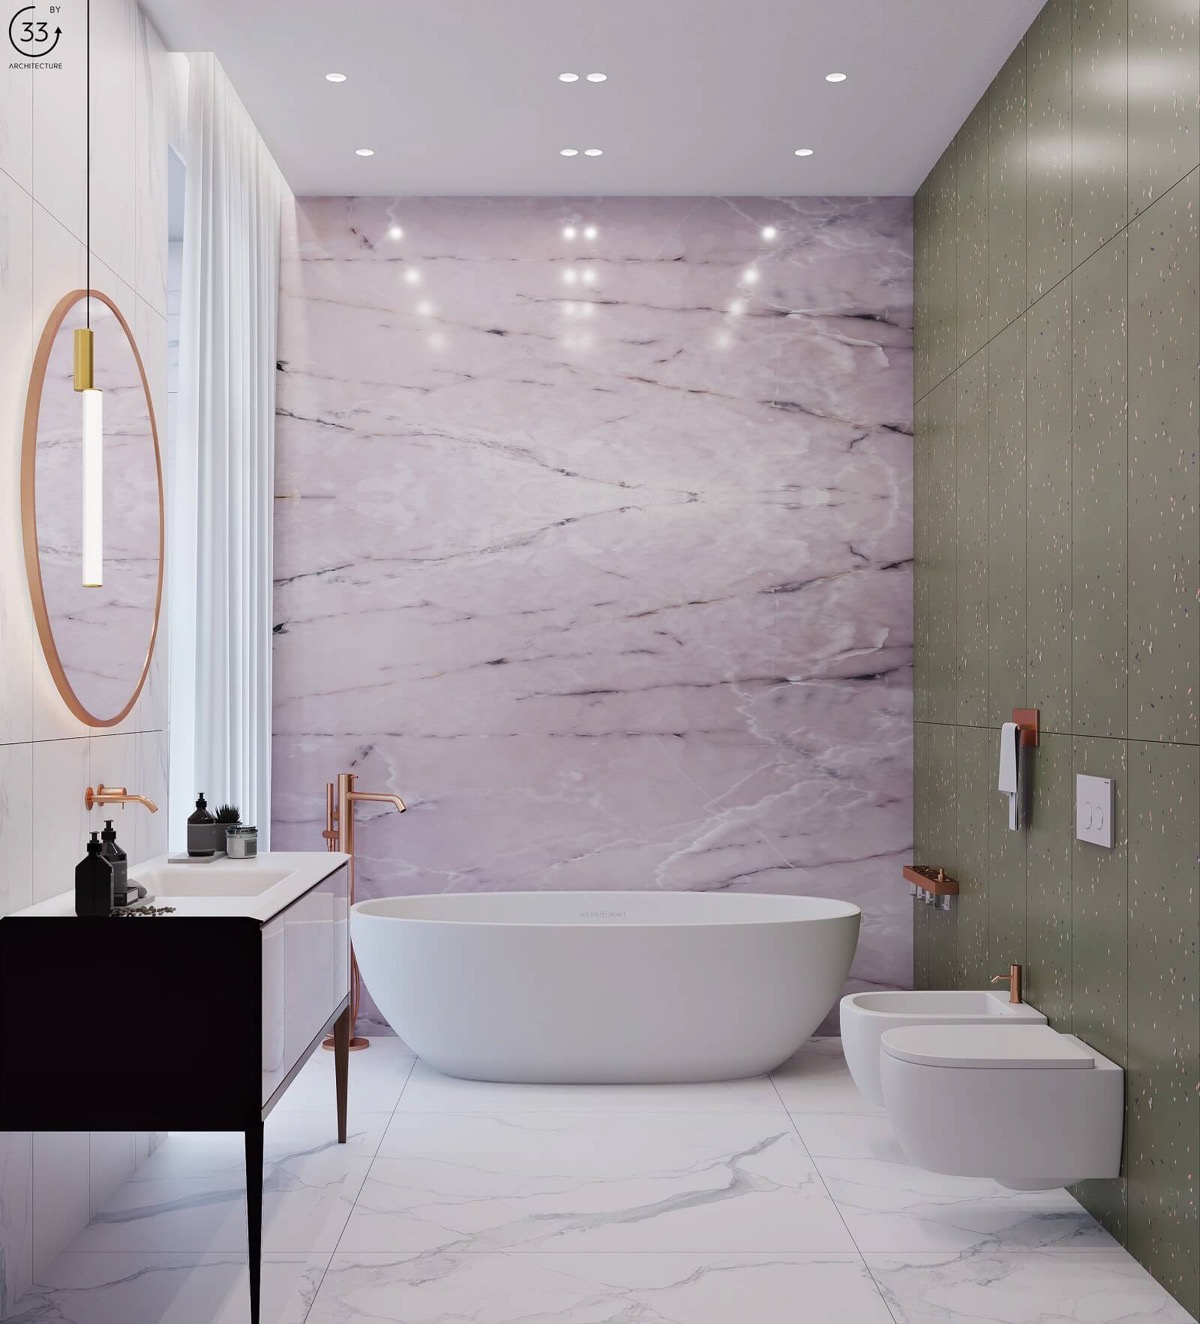 pink-and-grey-bathroom-ideas-600x662.jpg